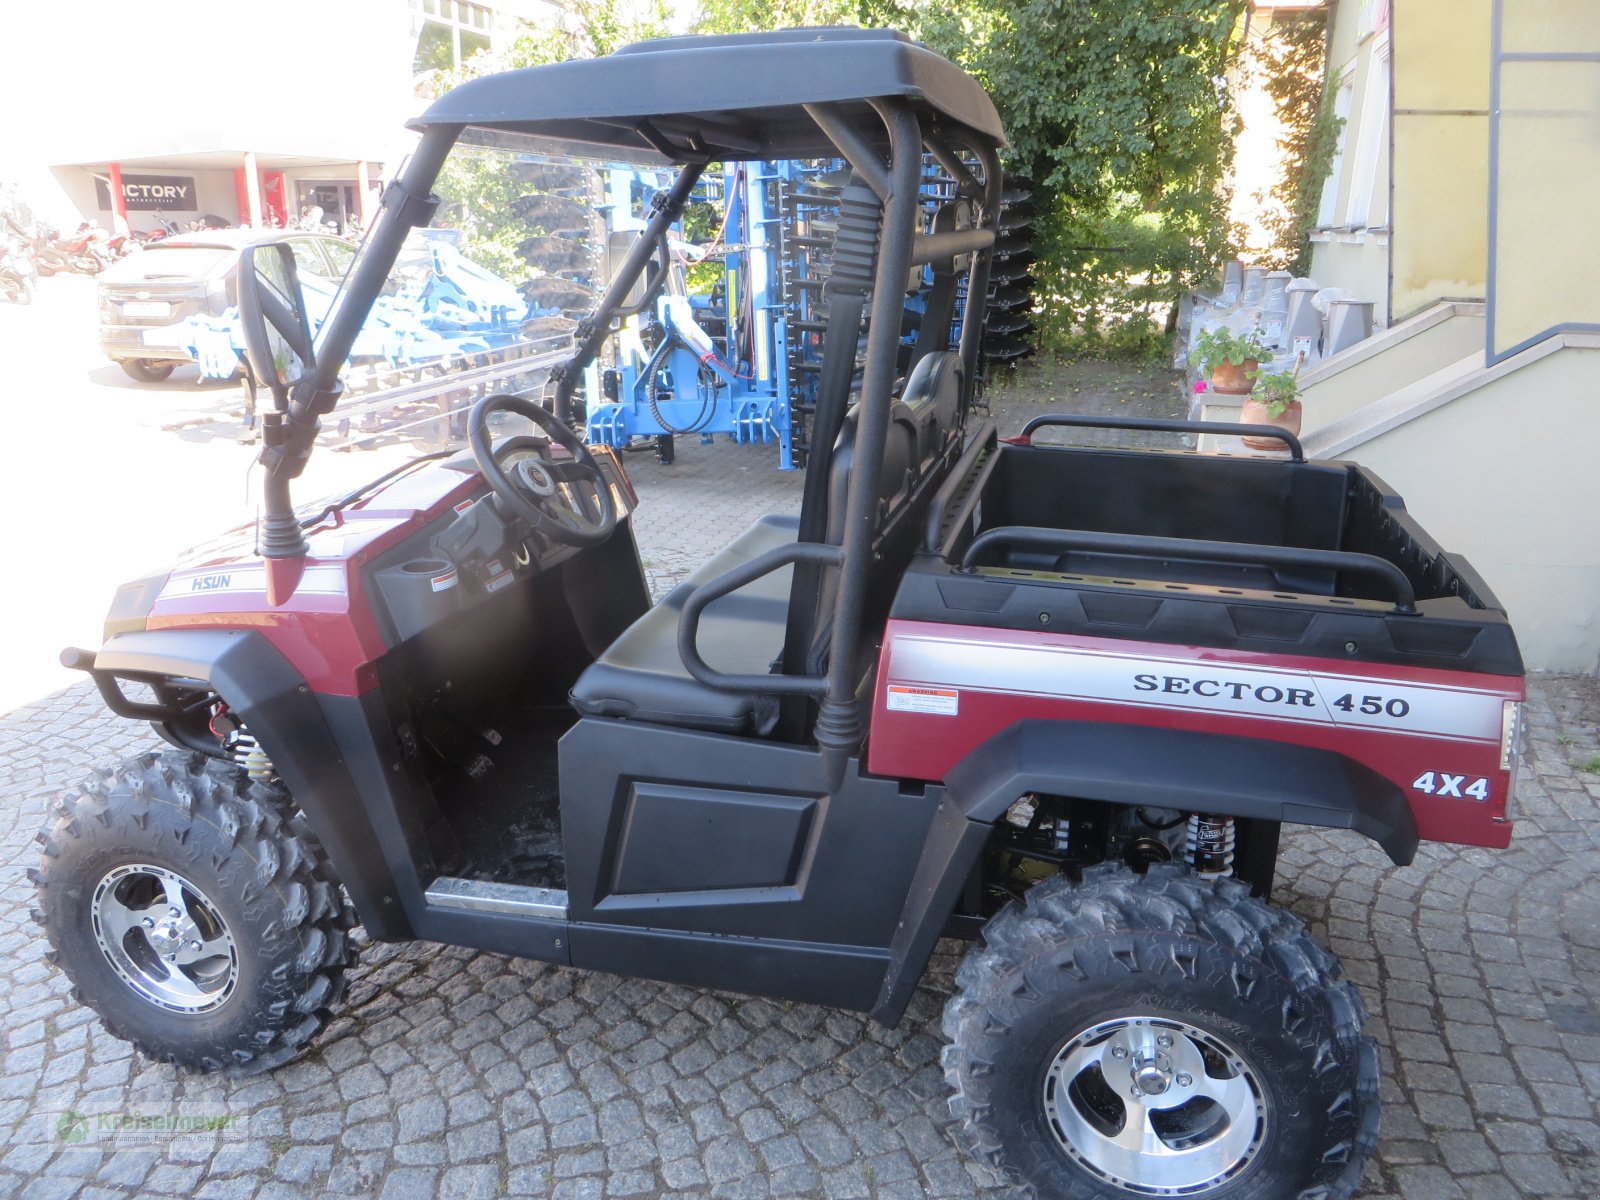 ATV & Quad des Typs Hisun Sector 450 Allrad 4x4 + Differenzial-Sperre + Straßenzulassung UTV, Forstfahrzeug, Buggy, Gator, Neumaschine in Feuchtwangen (Bild 3)